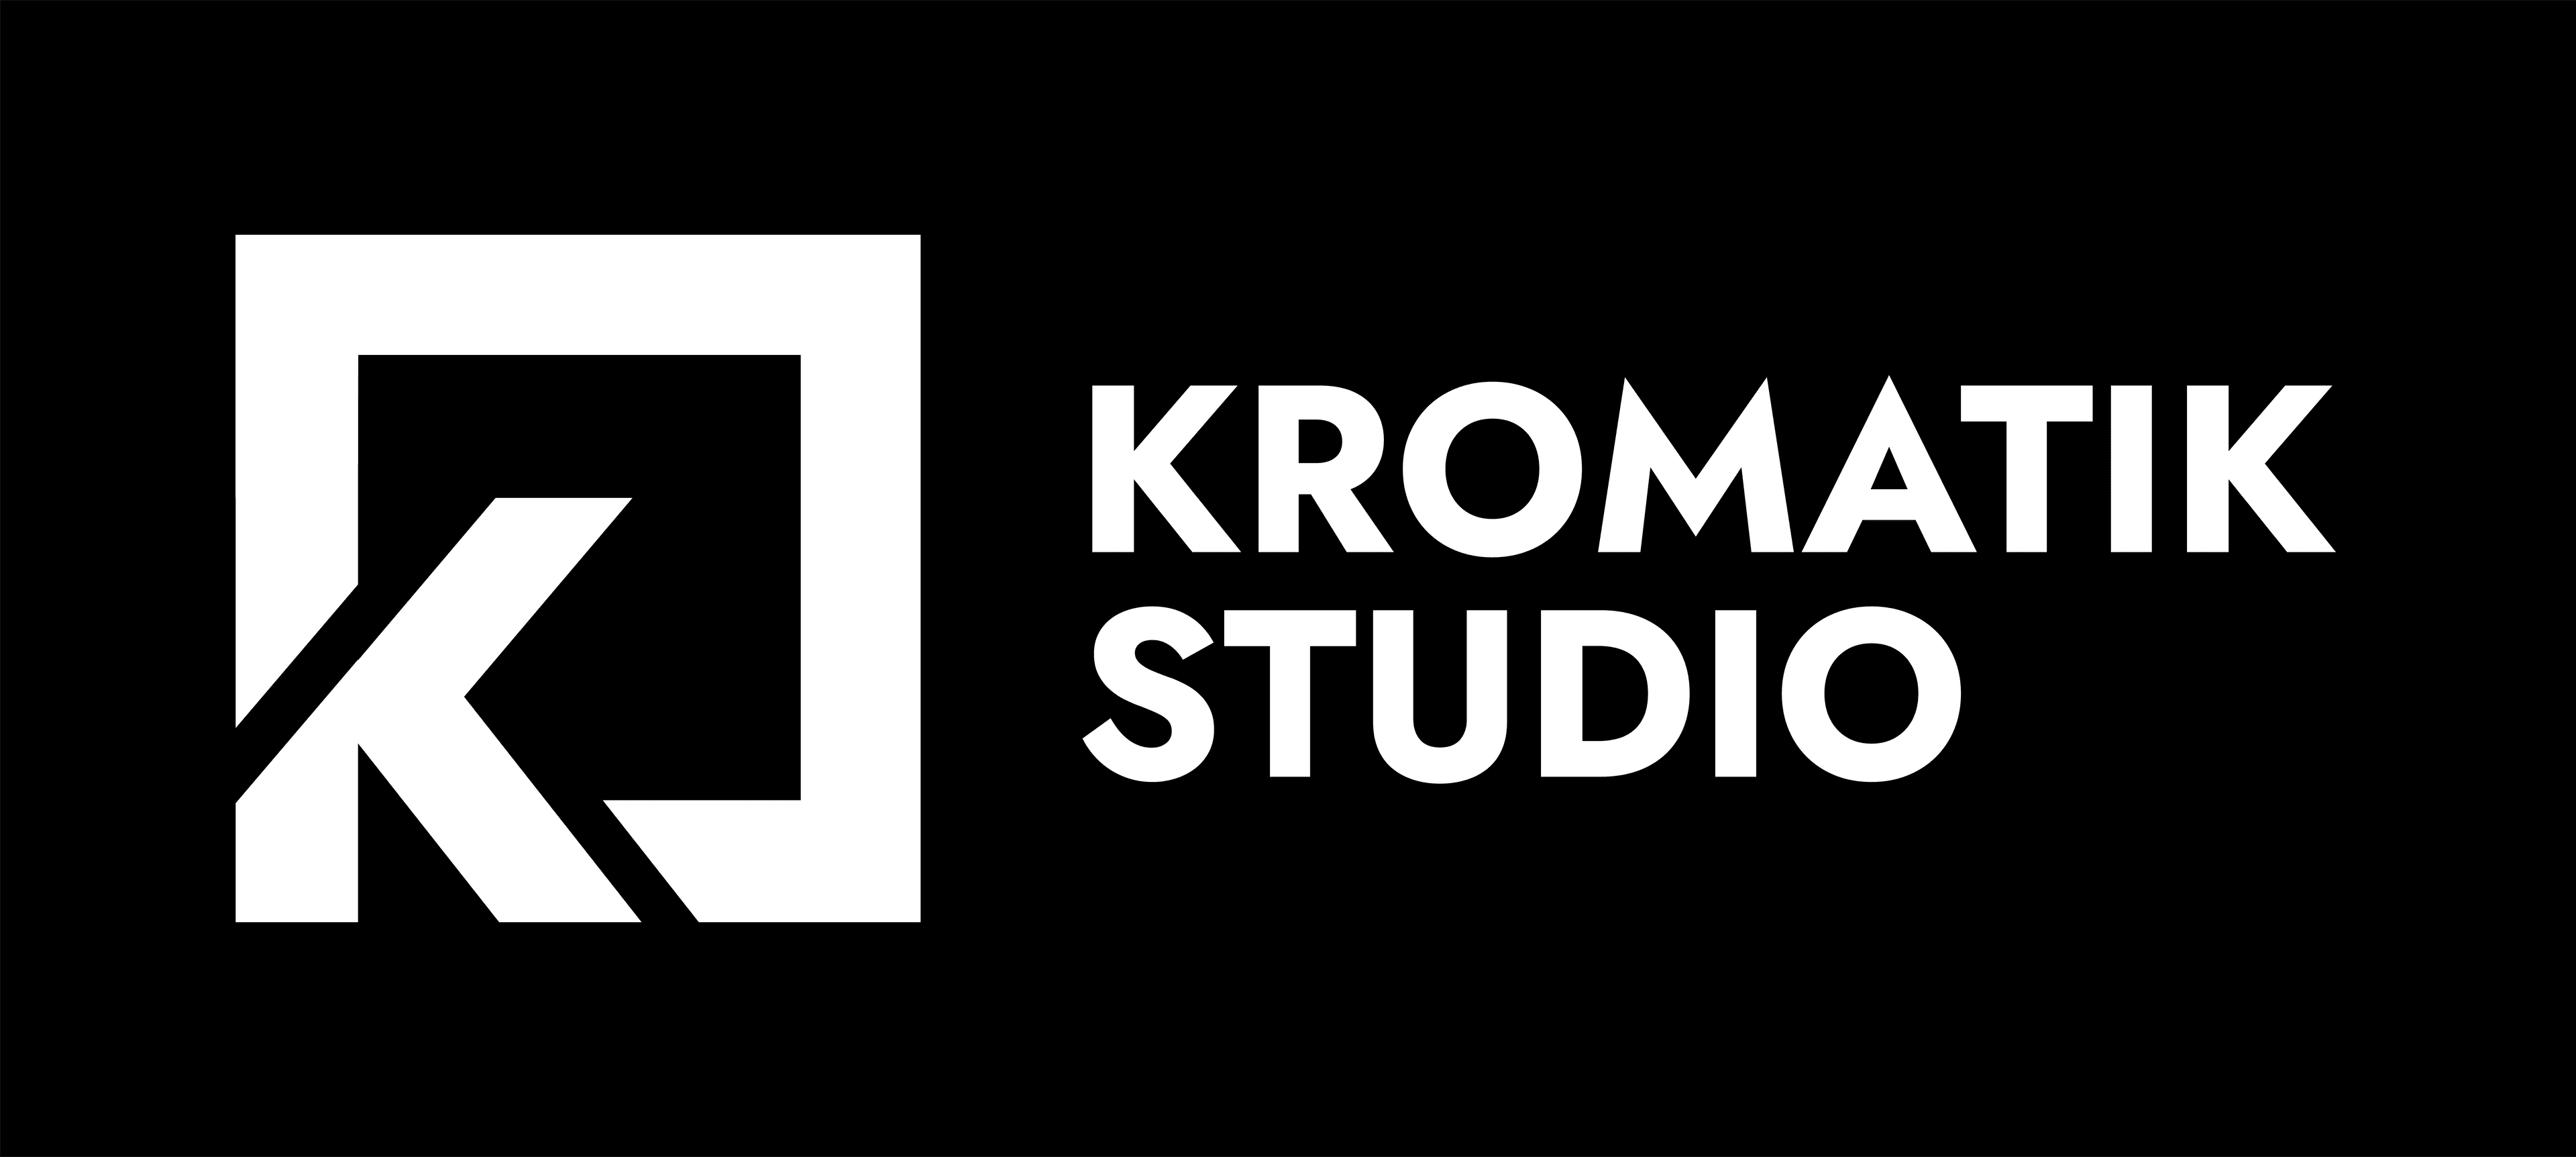 Kromatik-Studio cover